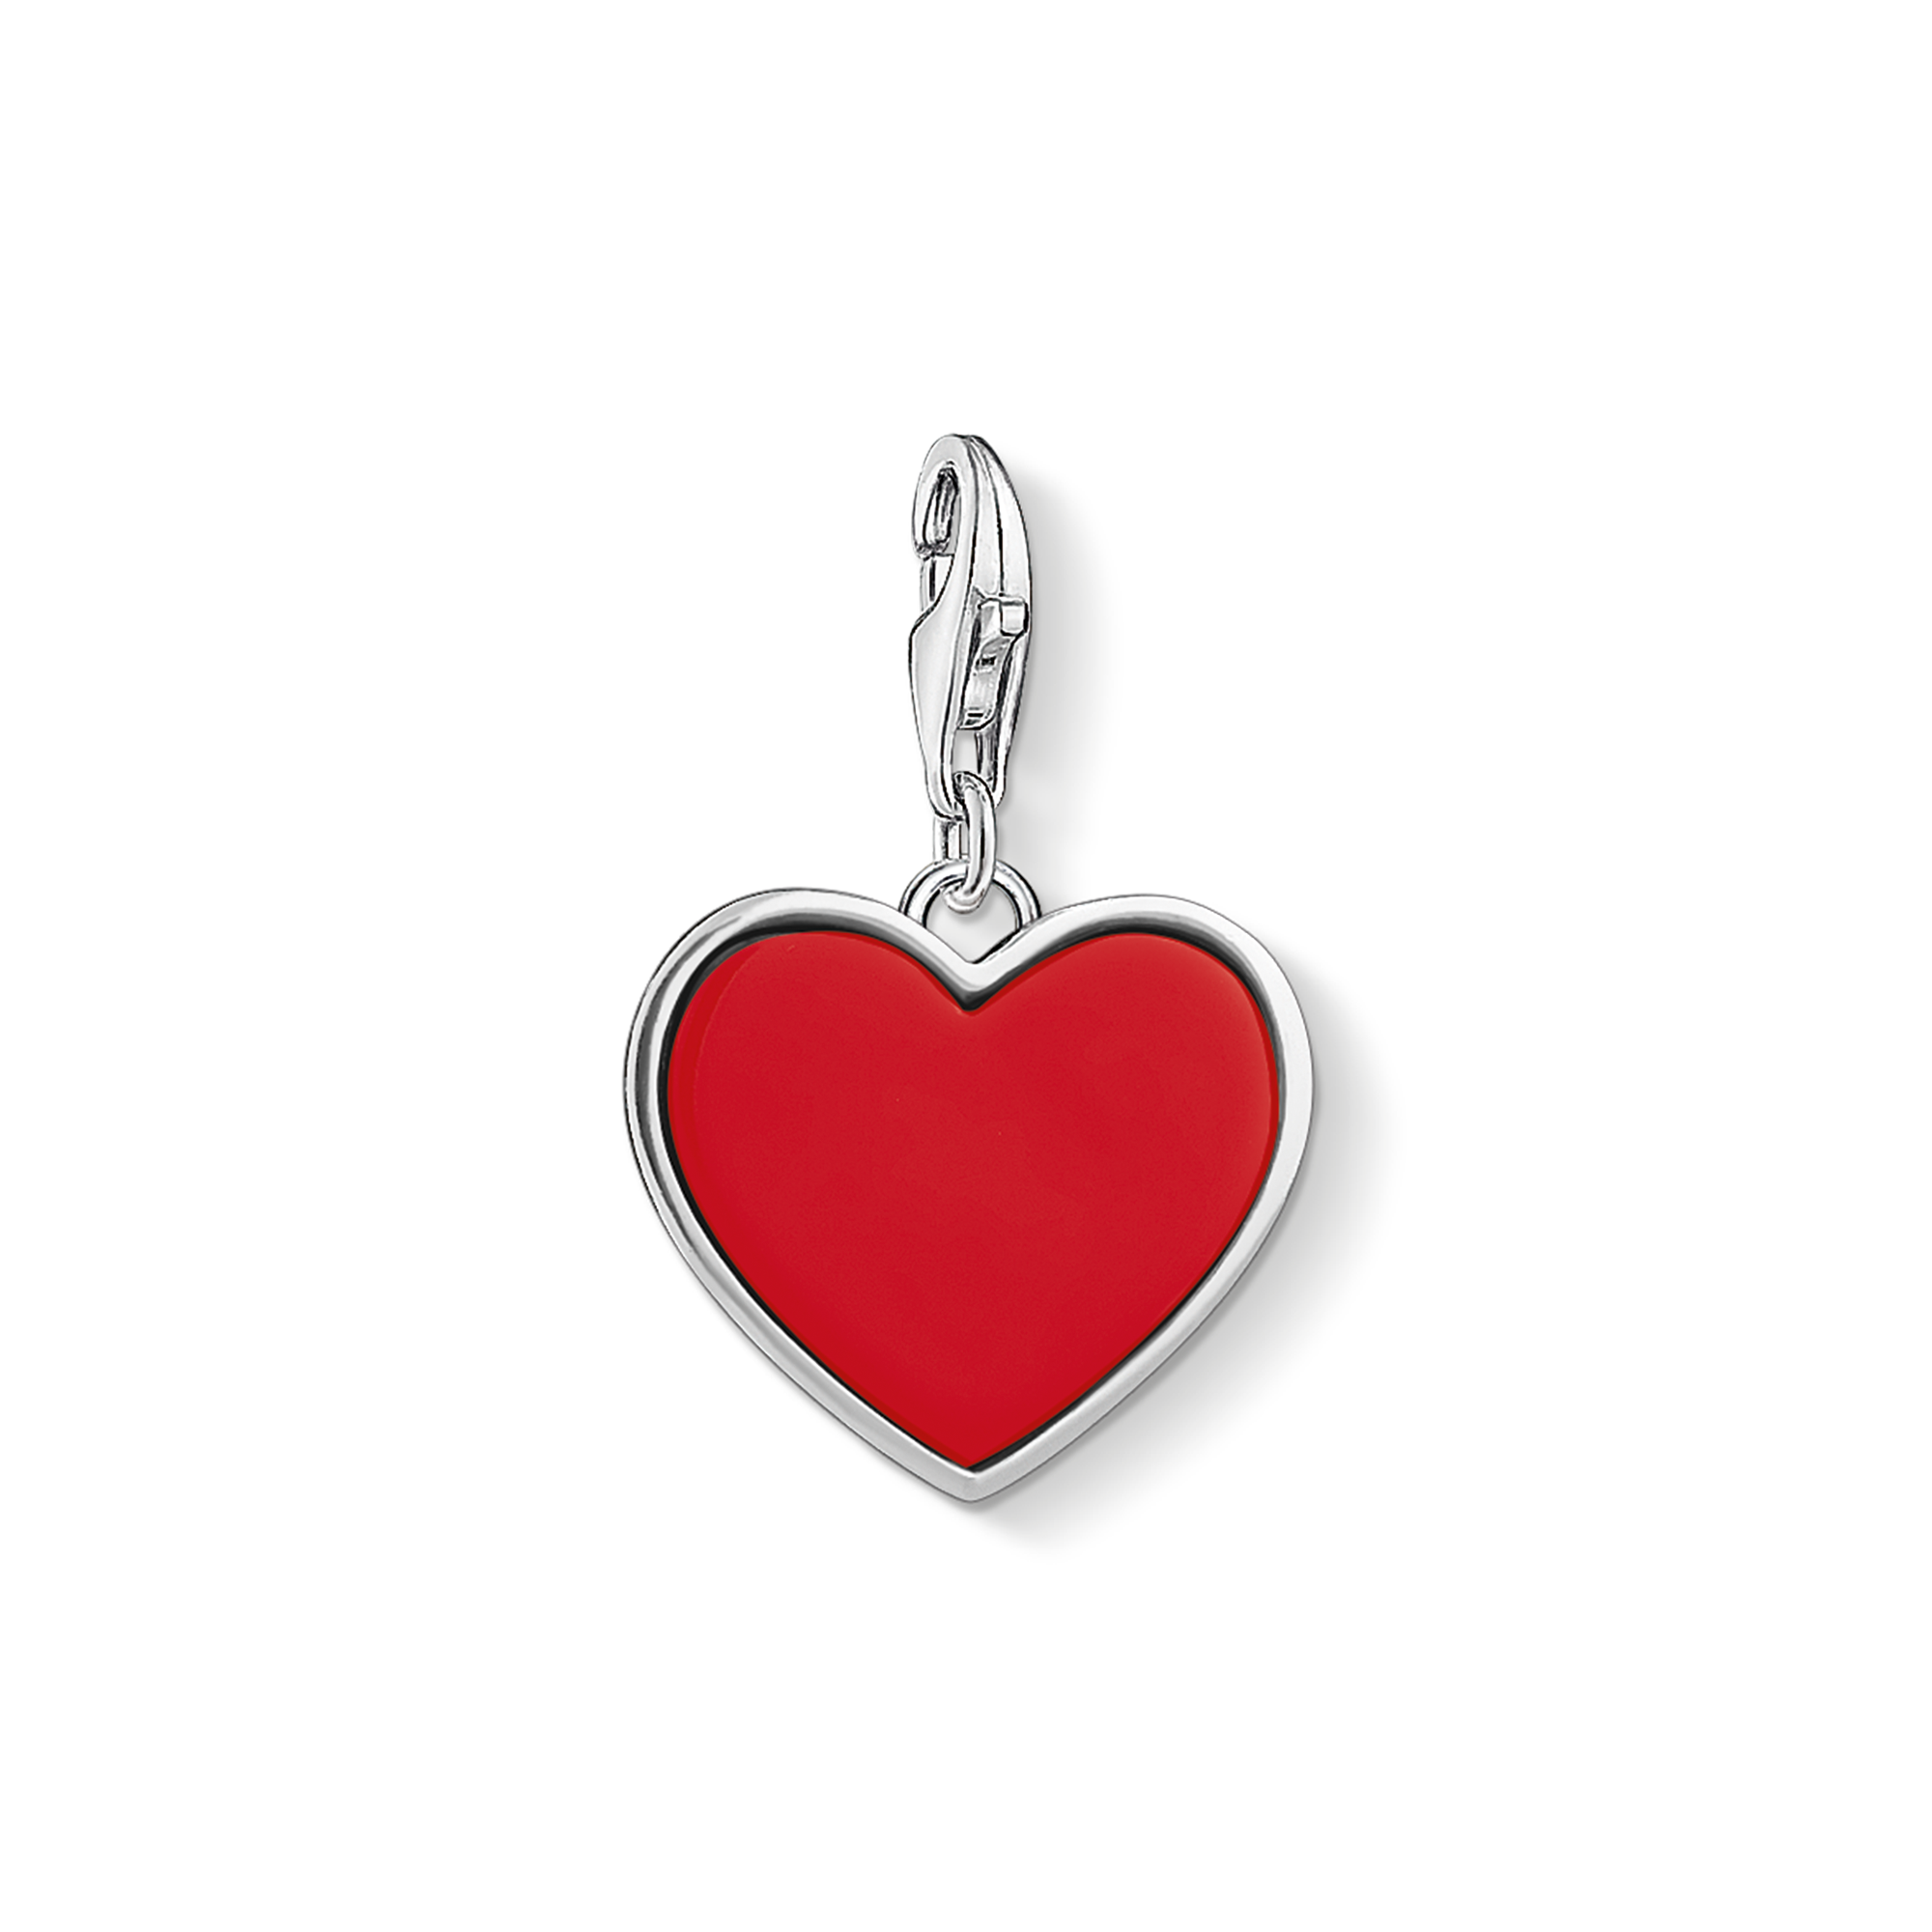 Charm-Anhänger „Rotes Herz“ Romantischer Liebesbeweis Tiefe Verbundenheit Große Gefühle Für immer verbunden: Der Charm in Herzform mit imitierter roter Koralle repräsentiert die ewige Liebe. Auf der Rückseite des Herz-Coins steht eingraviert der Liebesspruch „Love is because... of you“. - 0